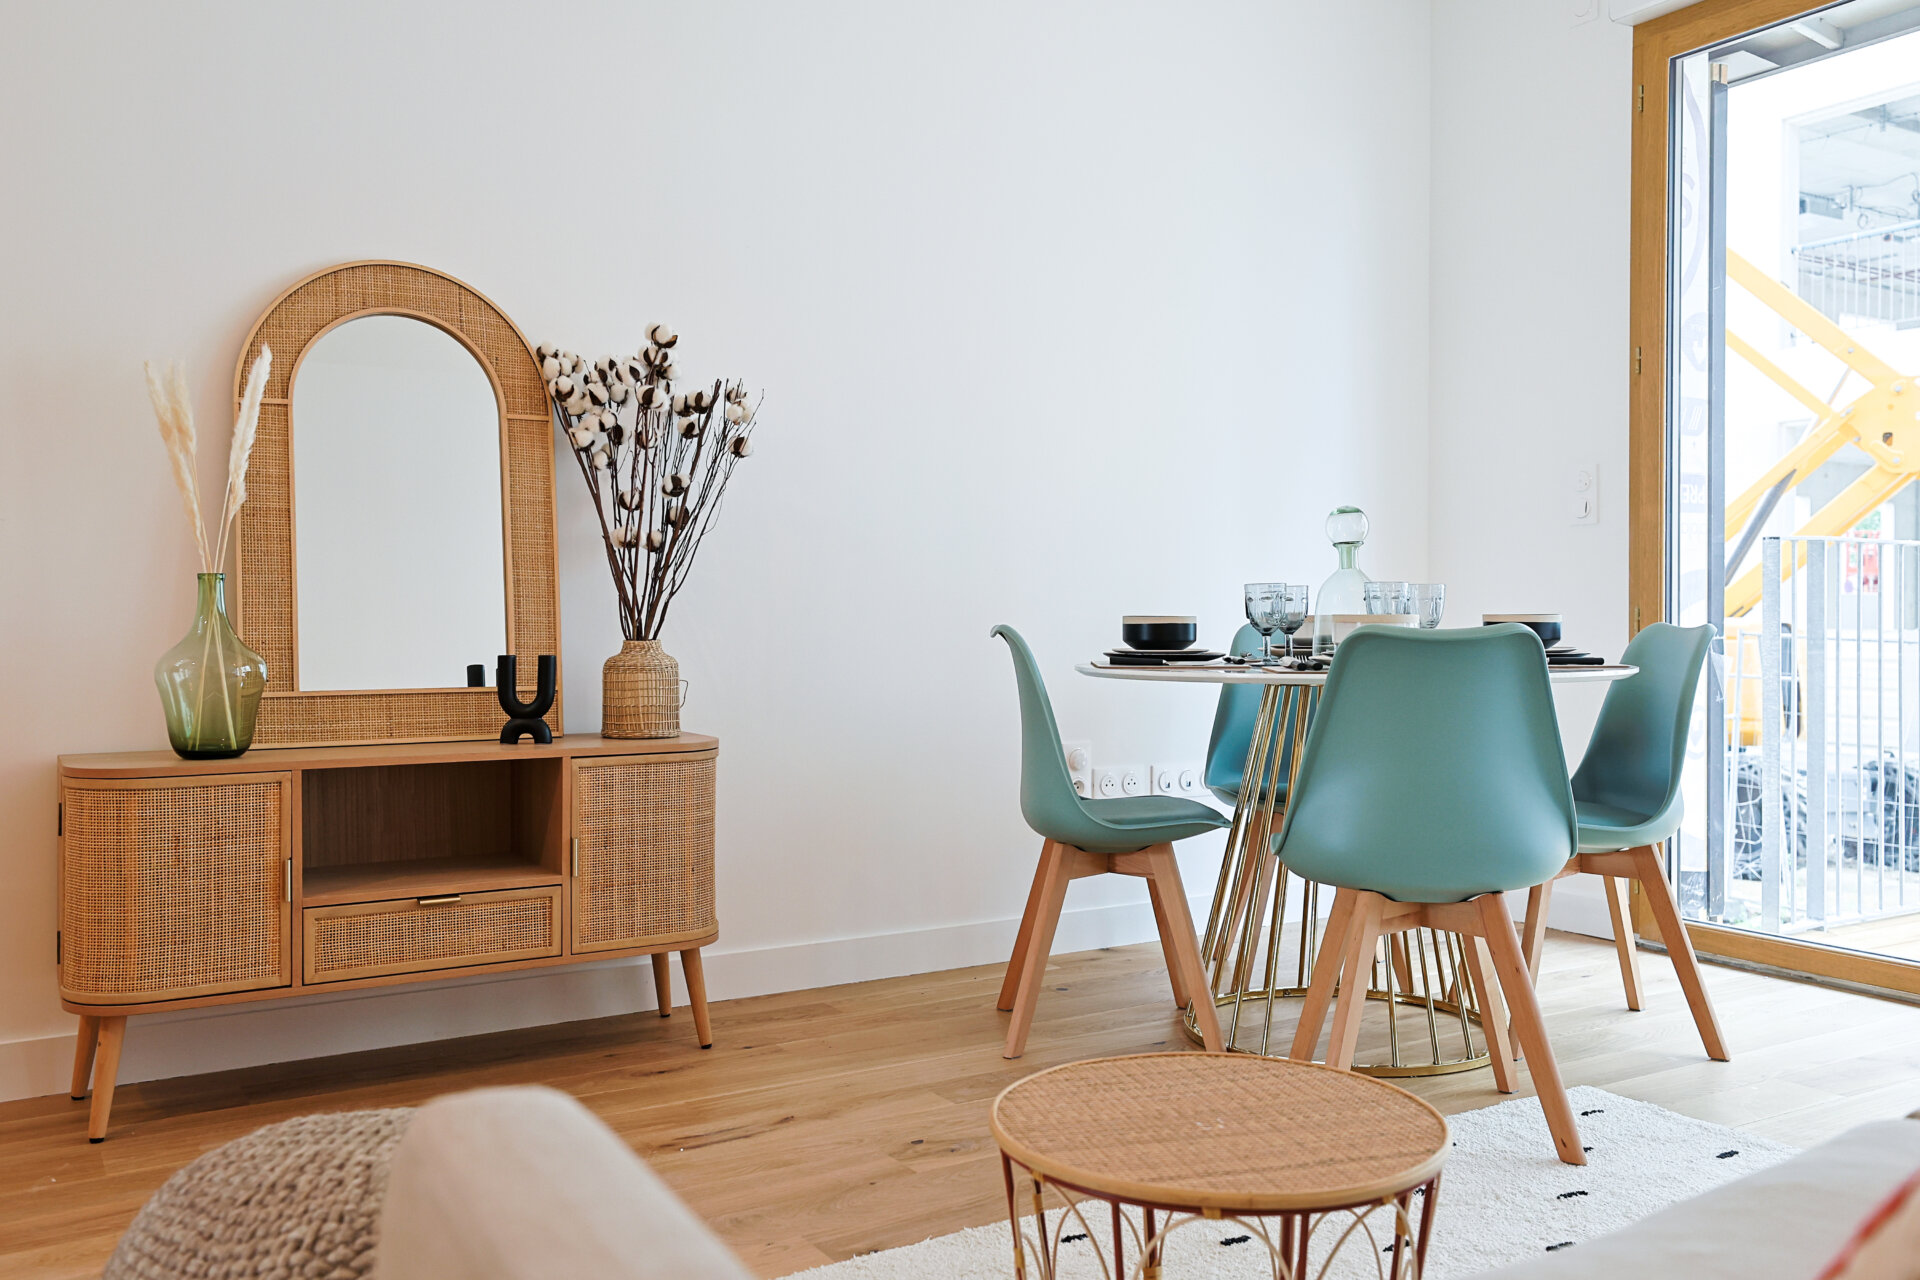 Conseil Immobilier Pack meublé : une offre de service clé en main pour meubler vos intérieurs